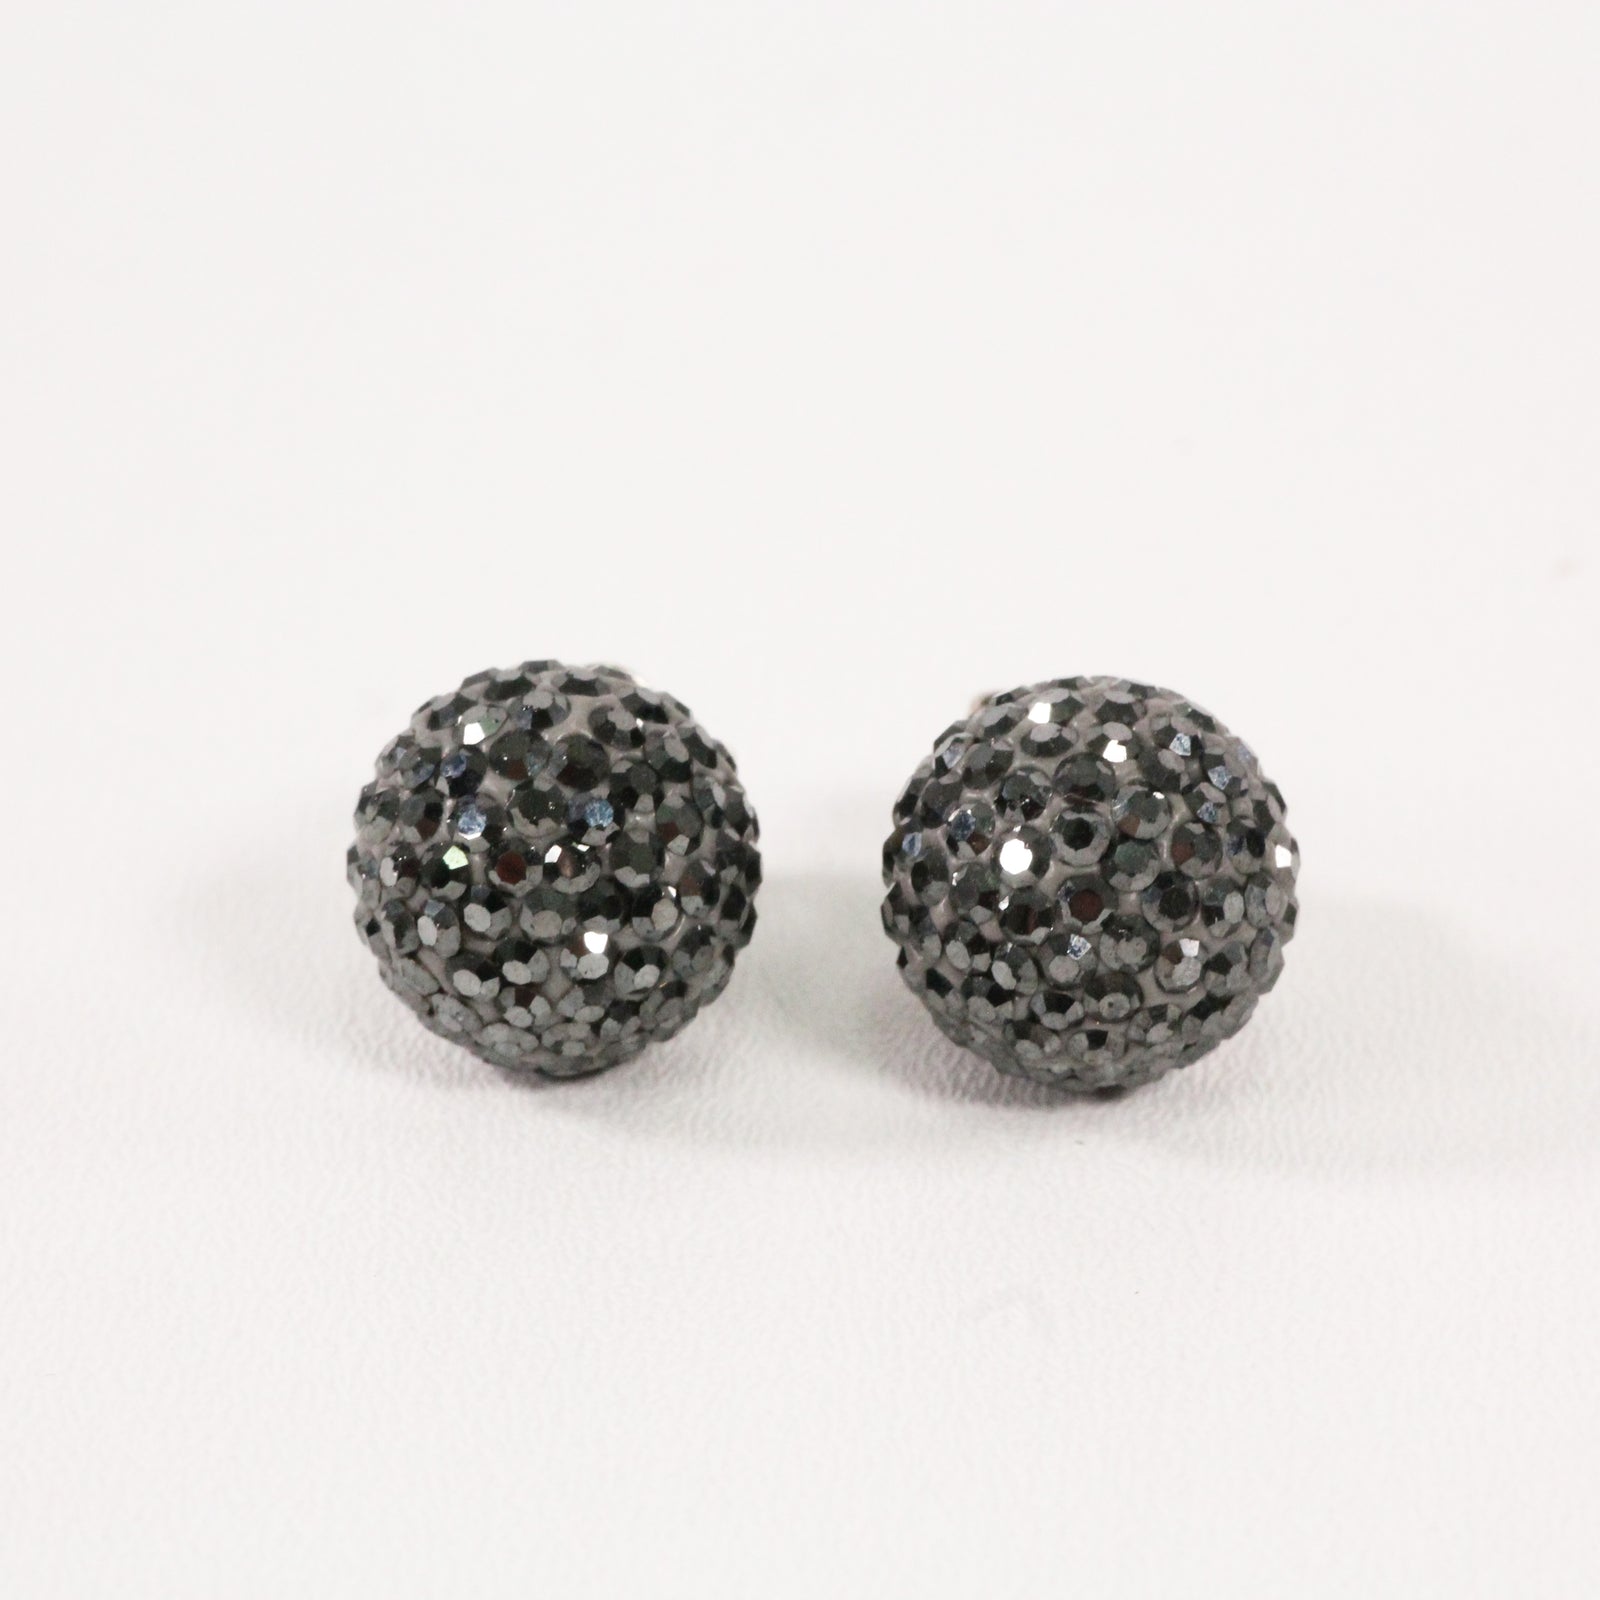 Black Sparkle Ball Earrings